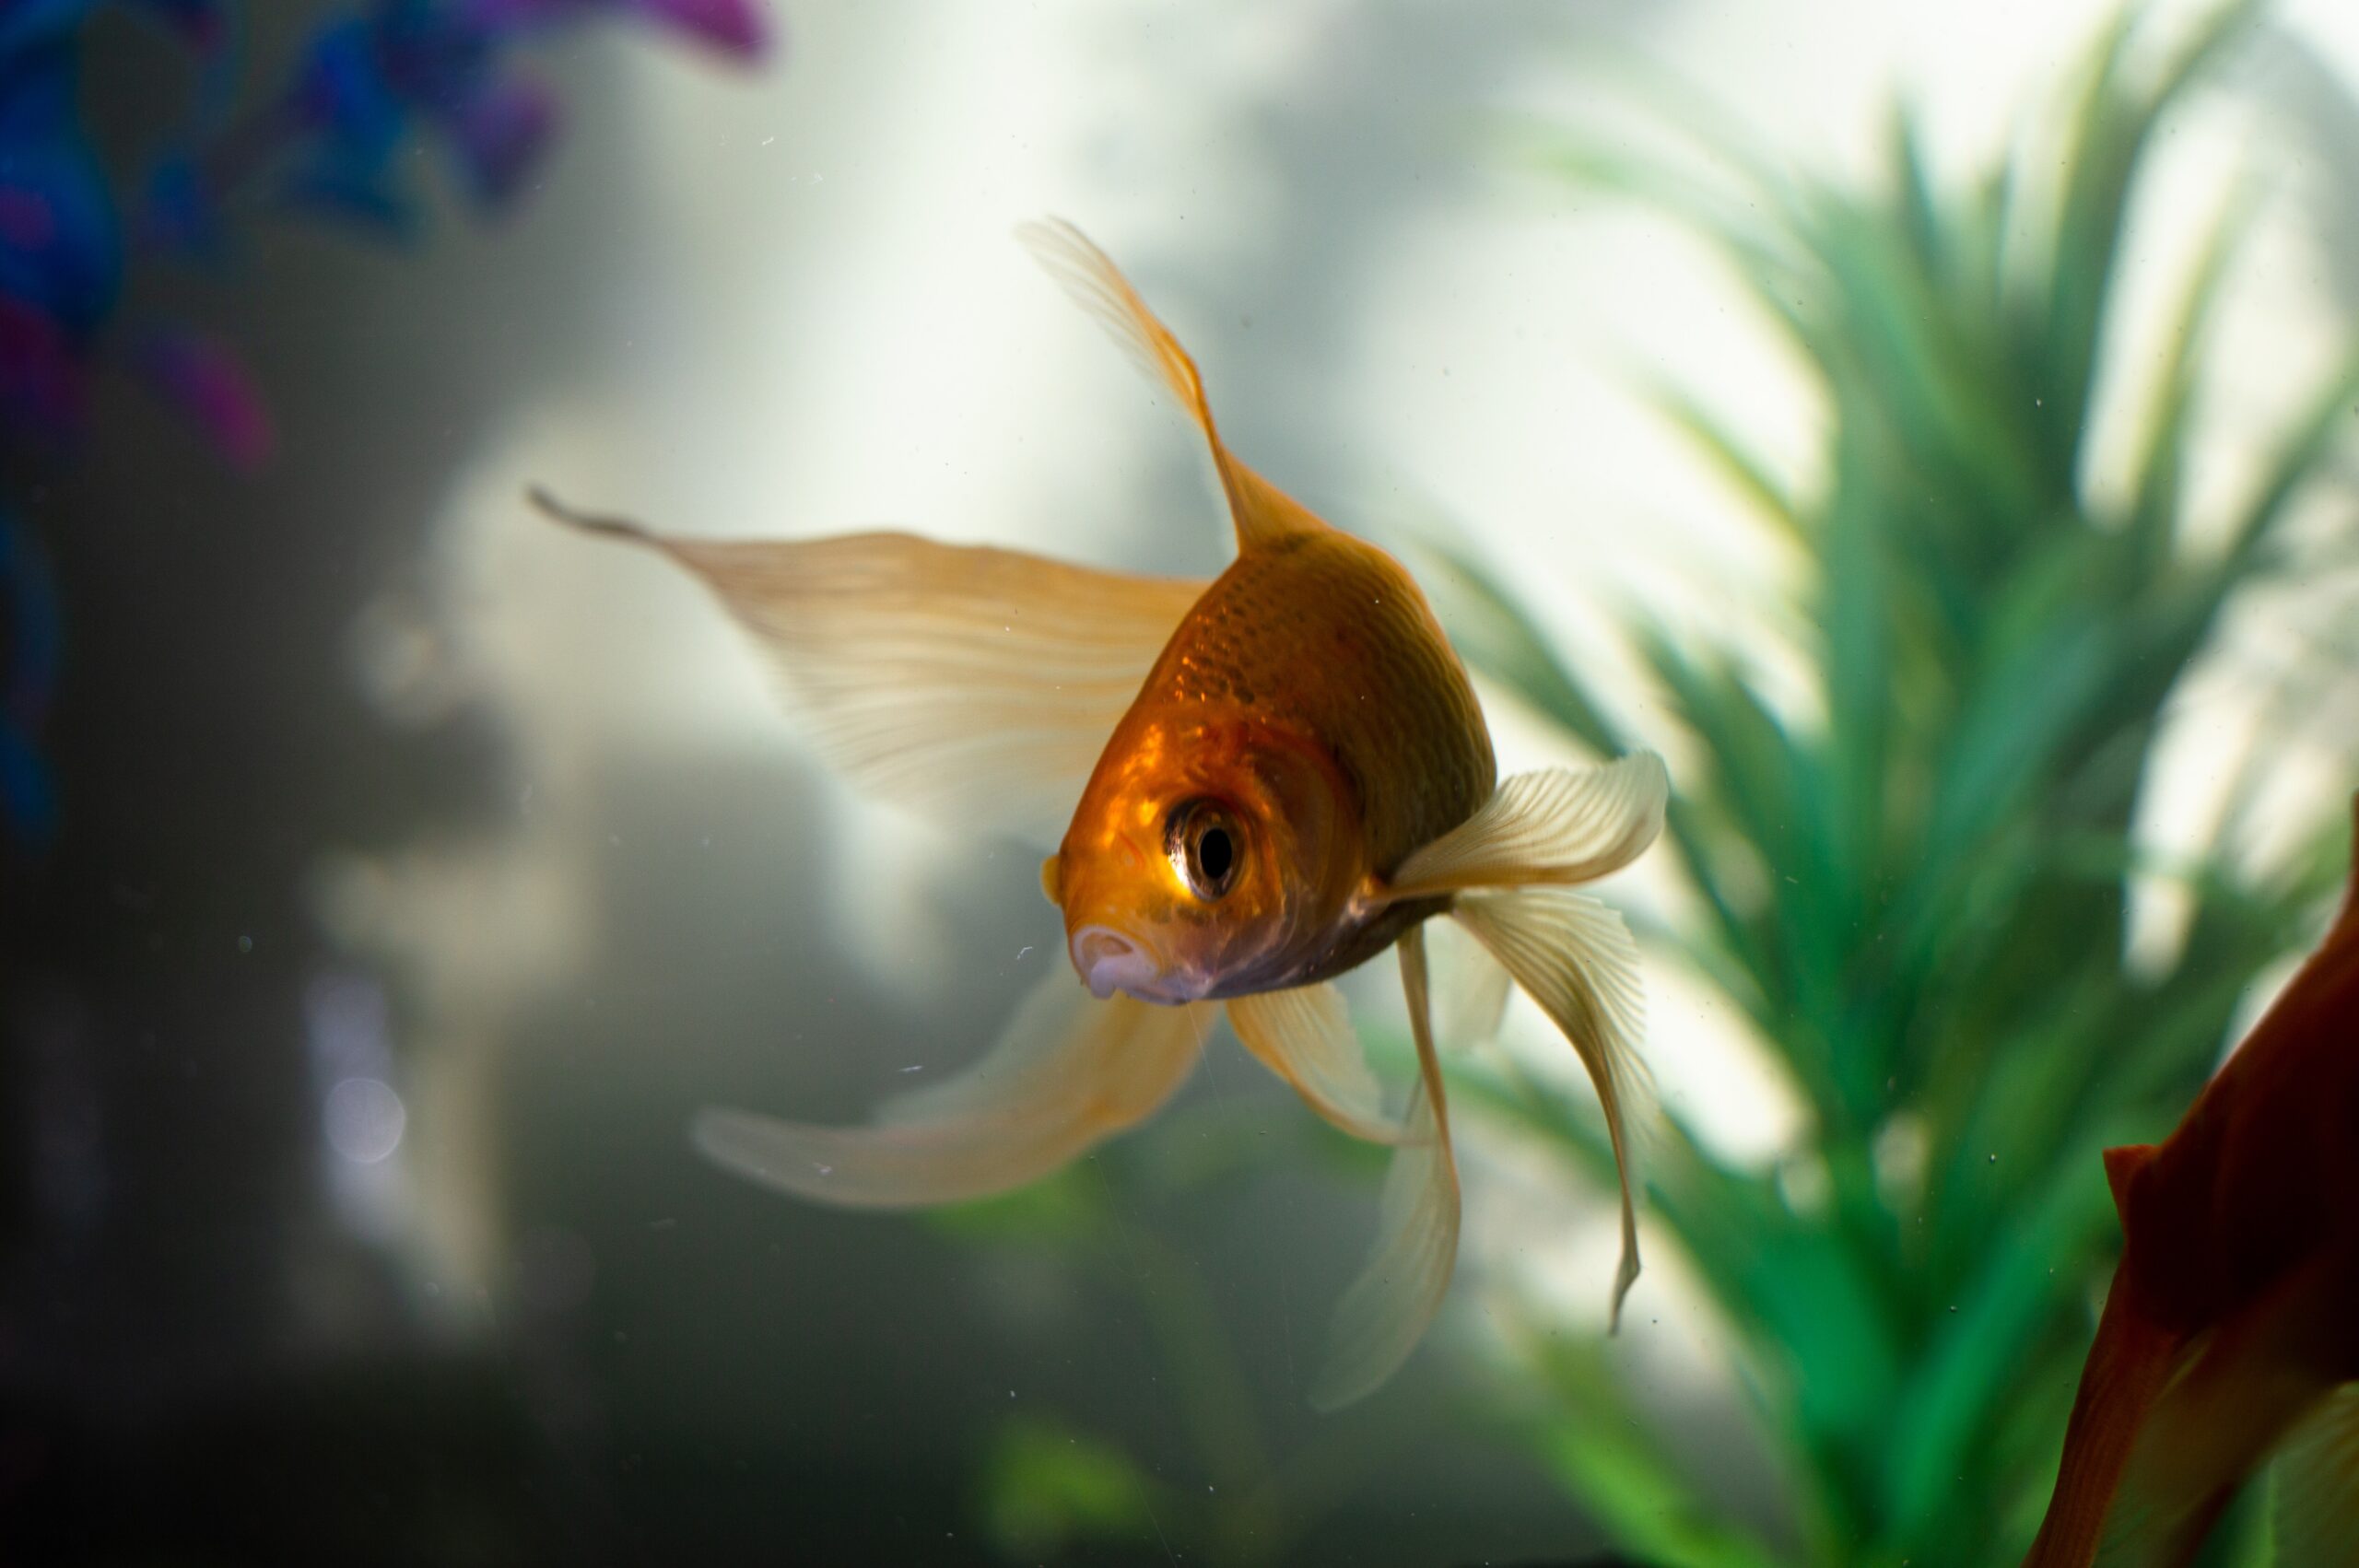 peixe-dourado-um-companheiro-aquatico-encantador